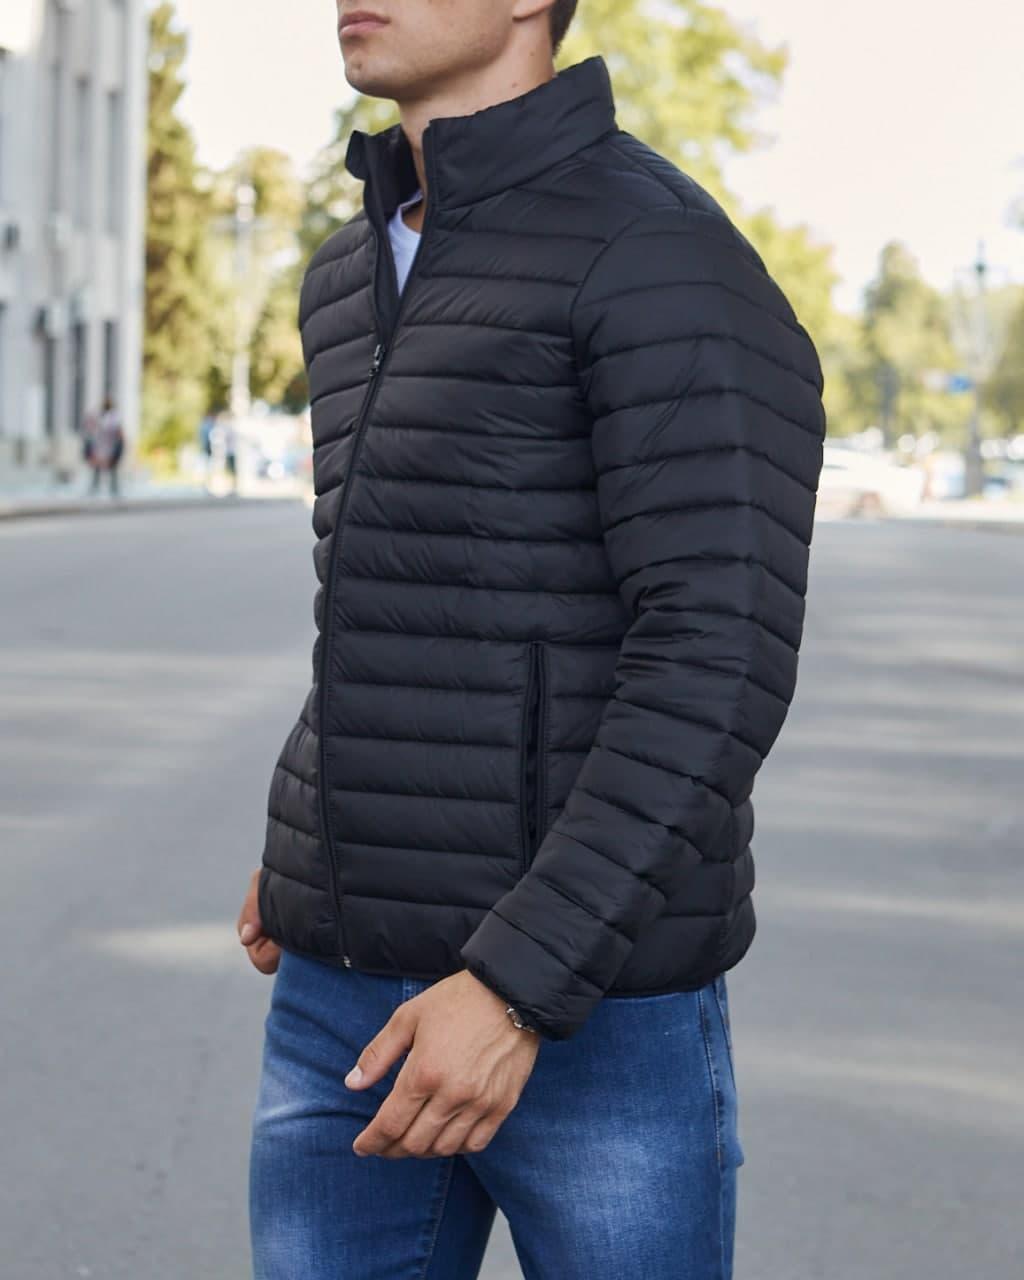 Весенняя куртка стеганная мужская черная бренд ТУР модель Классик - Фото 6